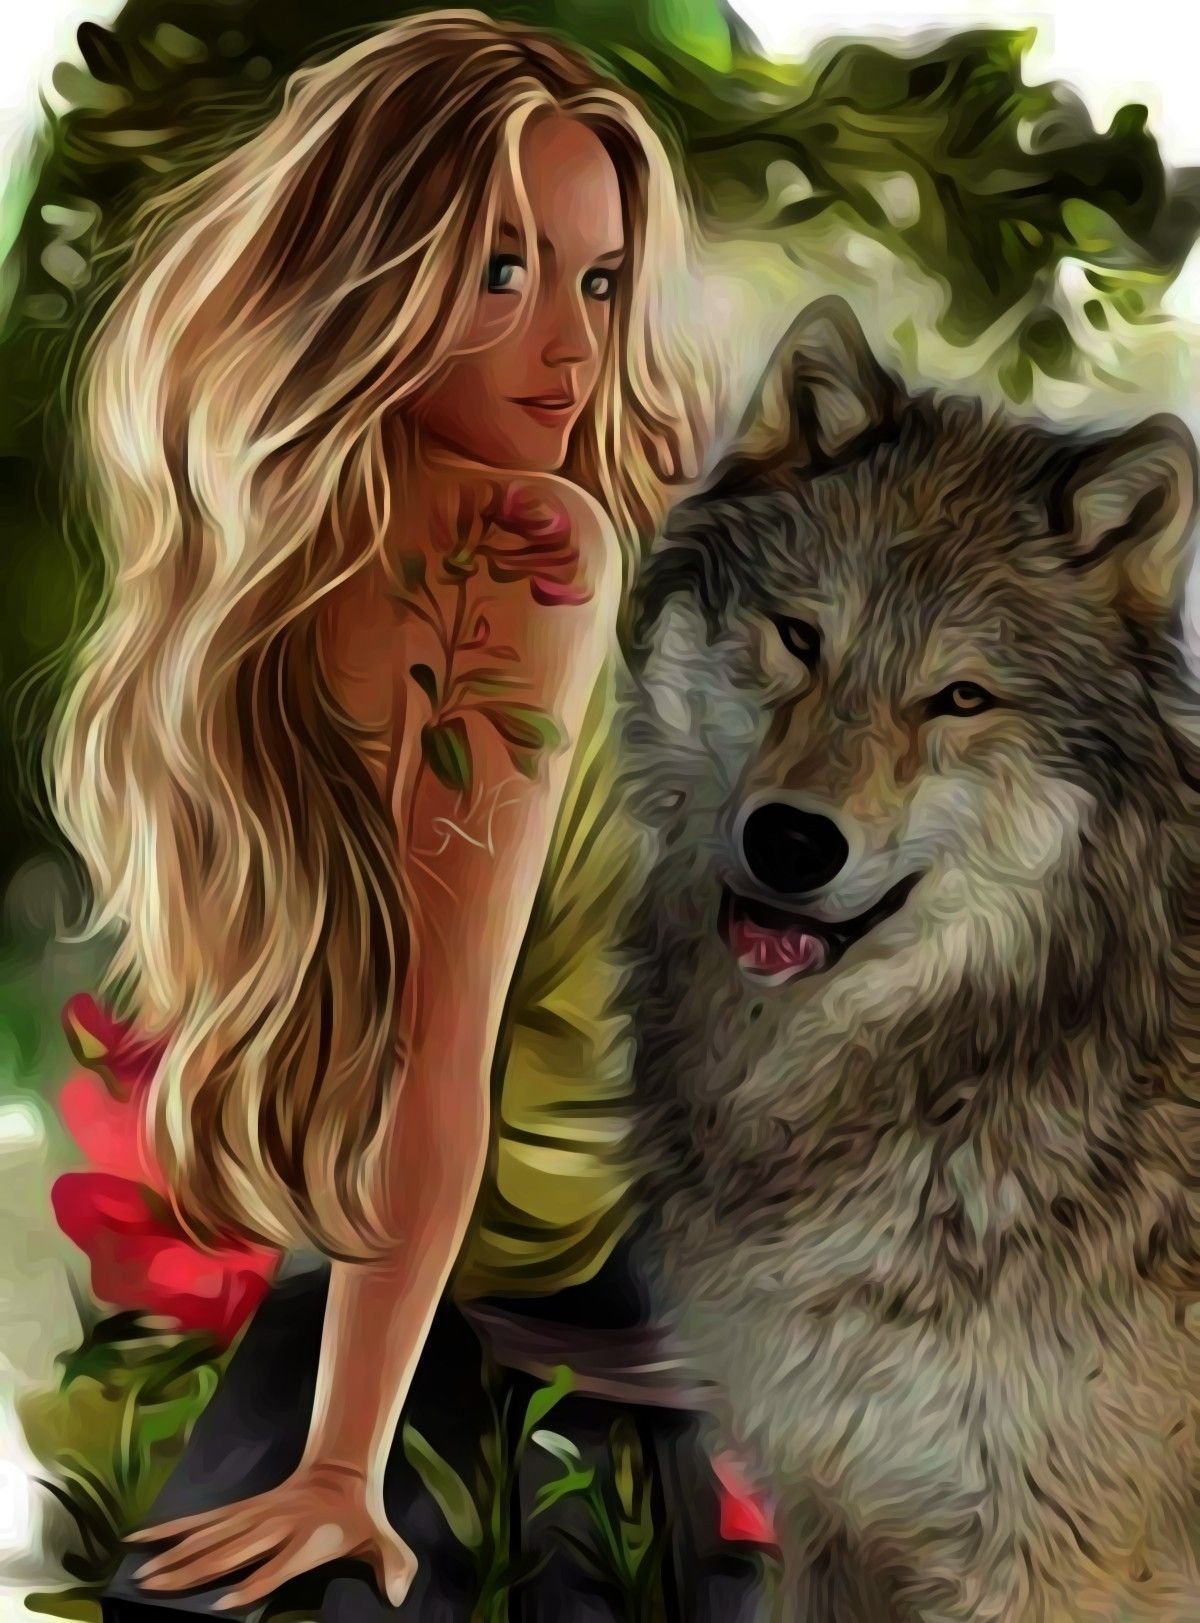 Красивая девушка с волком